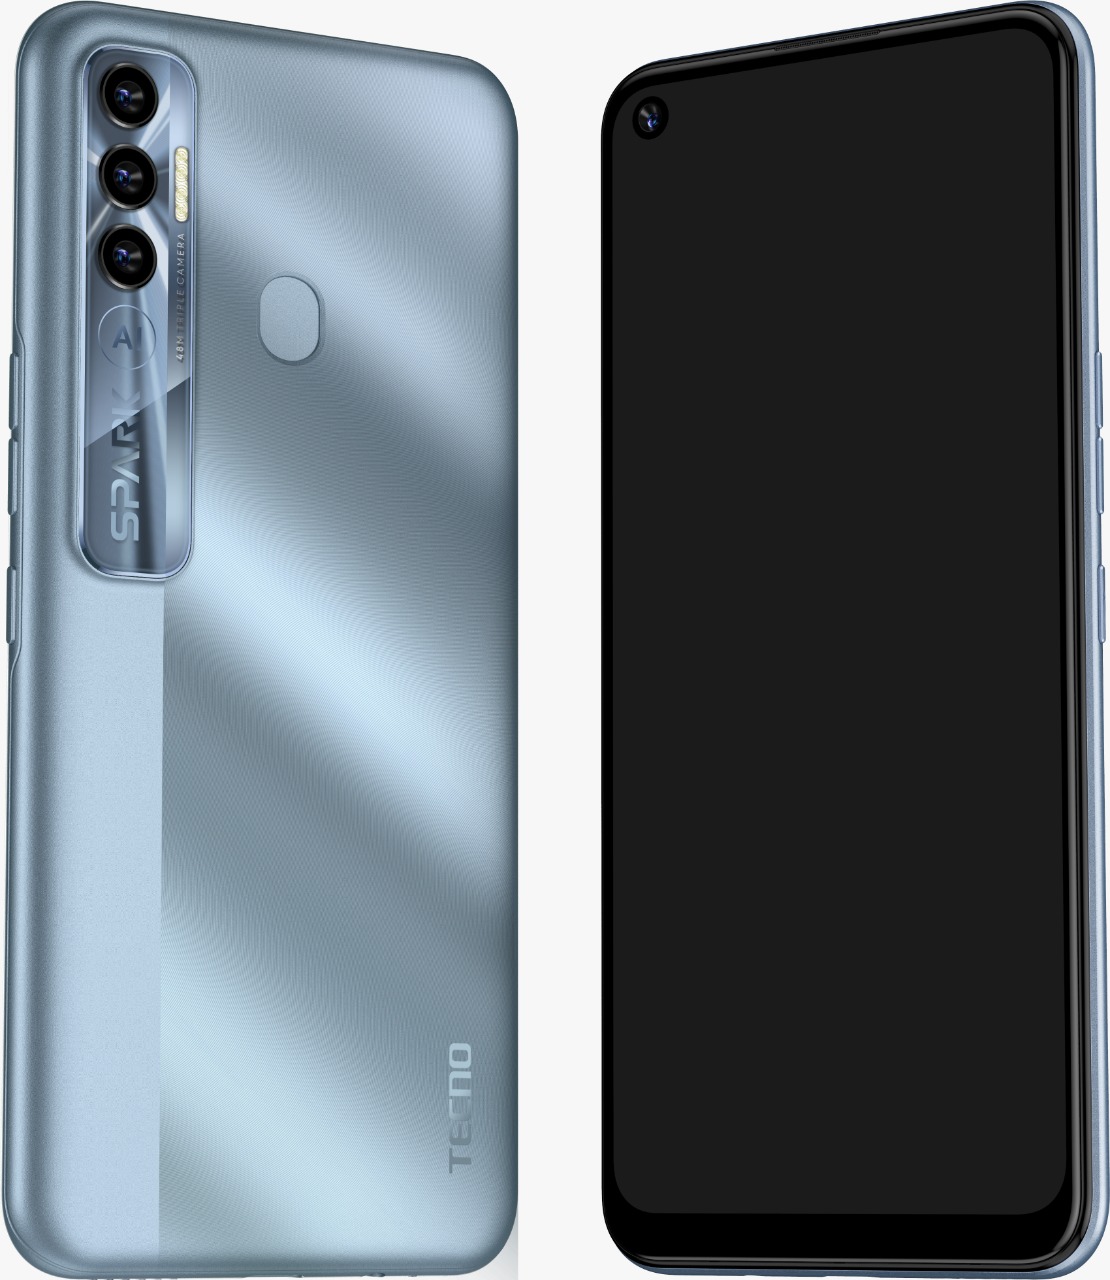 TECNO Mobile anuncia el lanzamiento del innovador Spark 7 Pro, un dispositivo único, diseñado especialmente para la Generación Z.